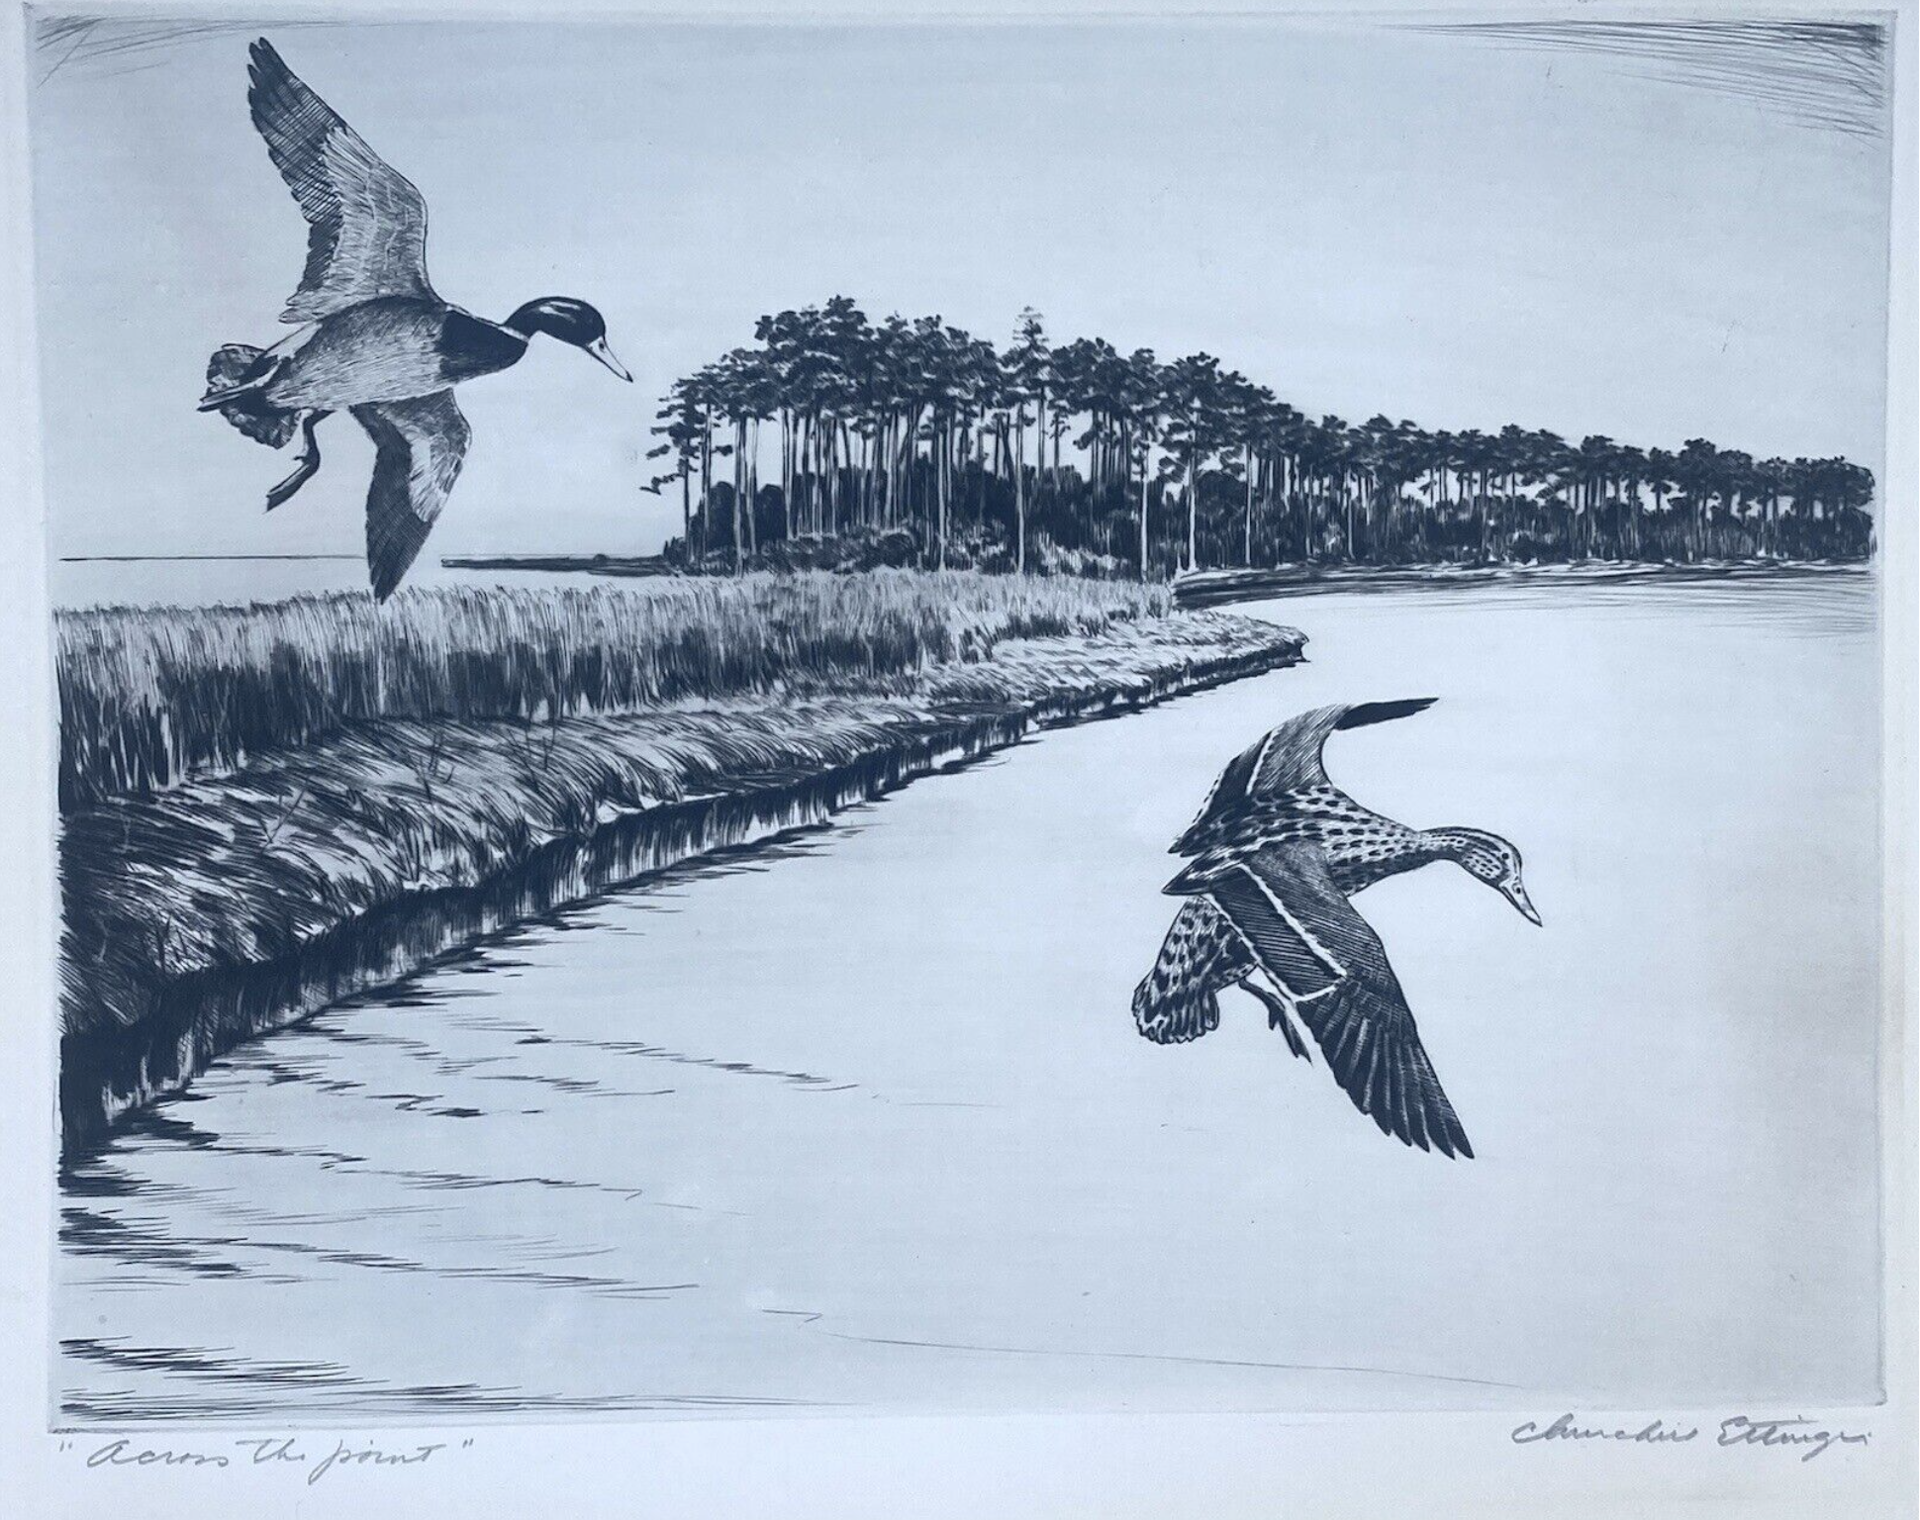 Across the Pond by Churchill Ettinger